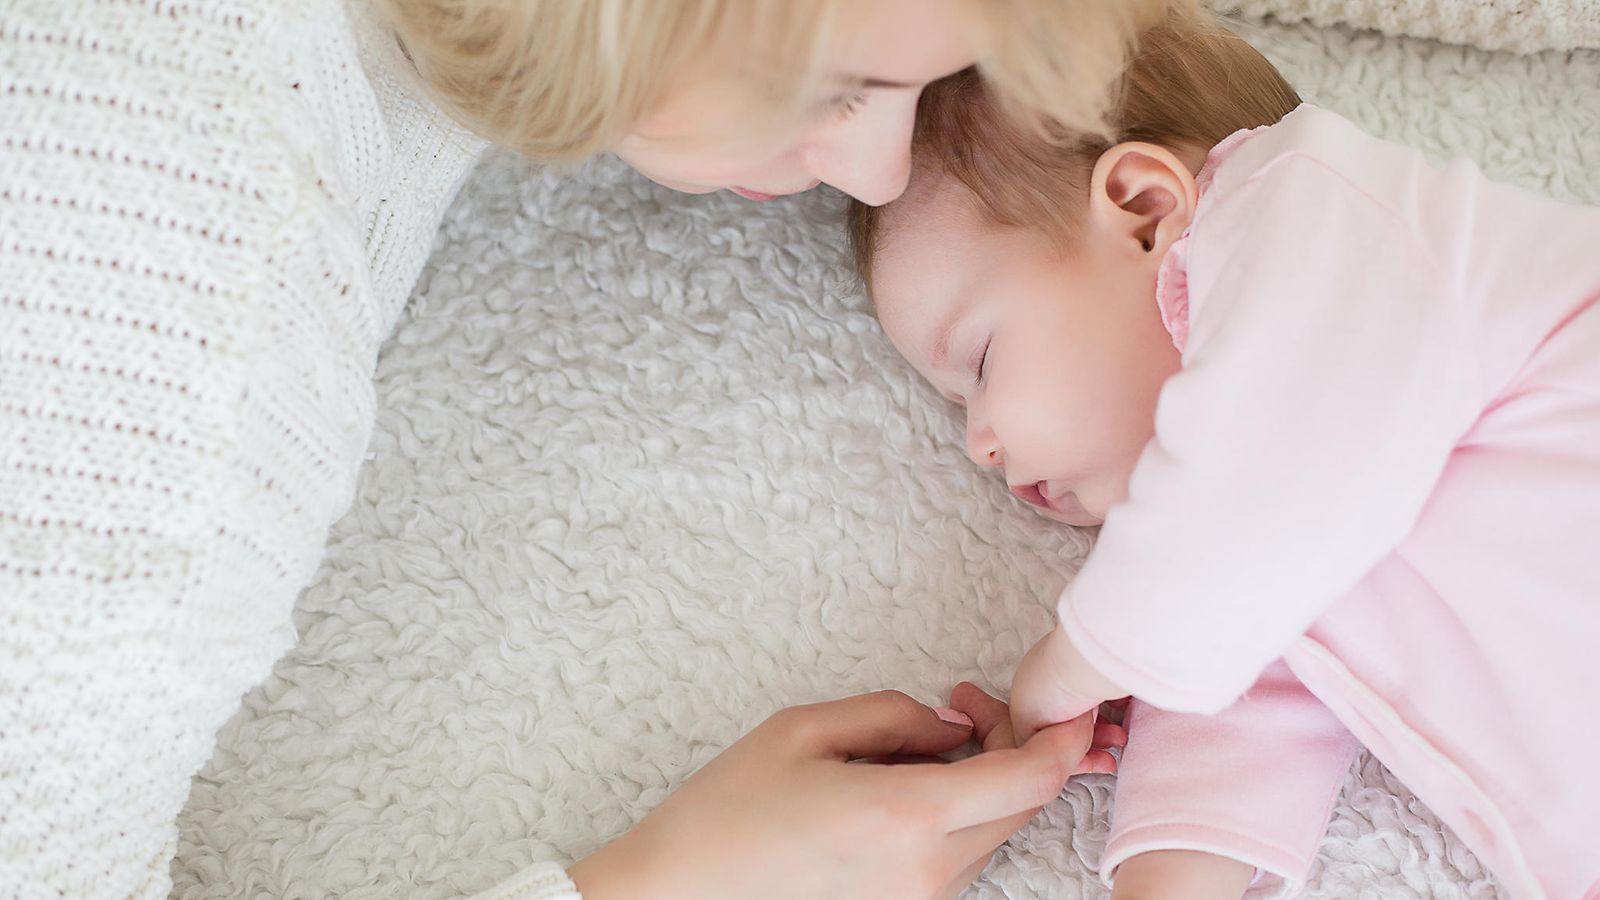 Äiti opetti vauvansa nukkumaan koko yön ilman itkua: 